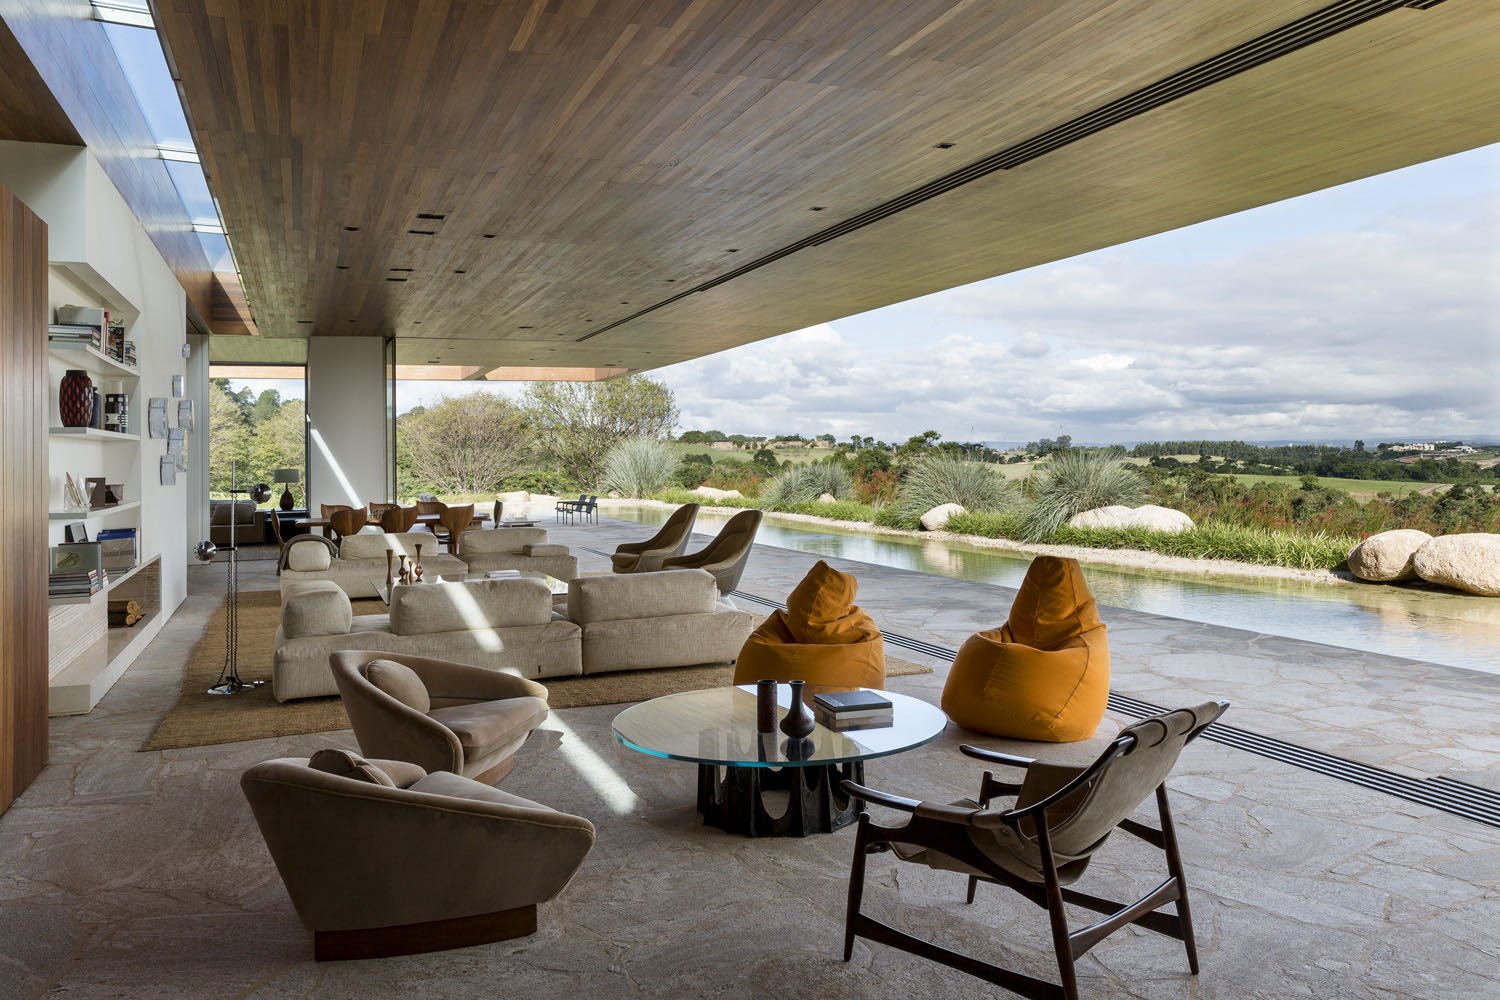 Contemporary Casa MS - Studio Arthur Casas - living room exterior